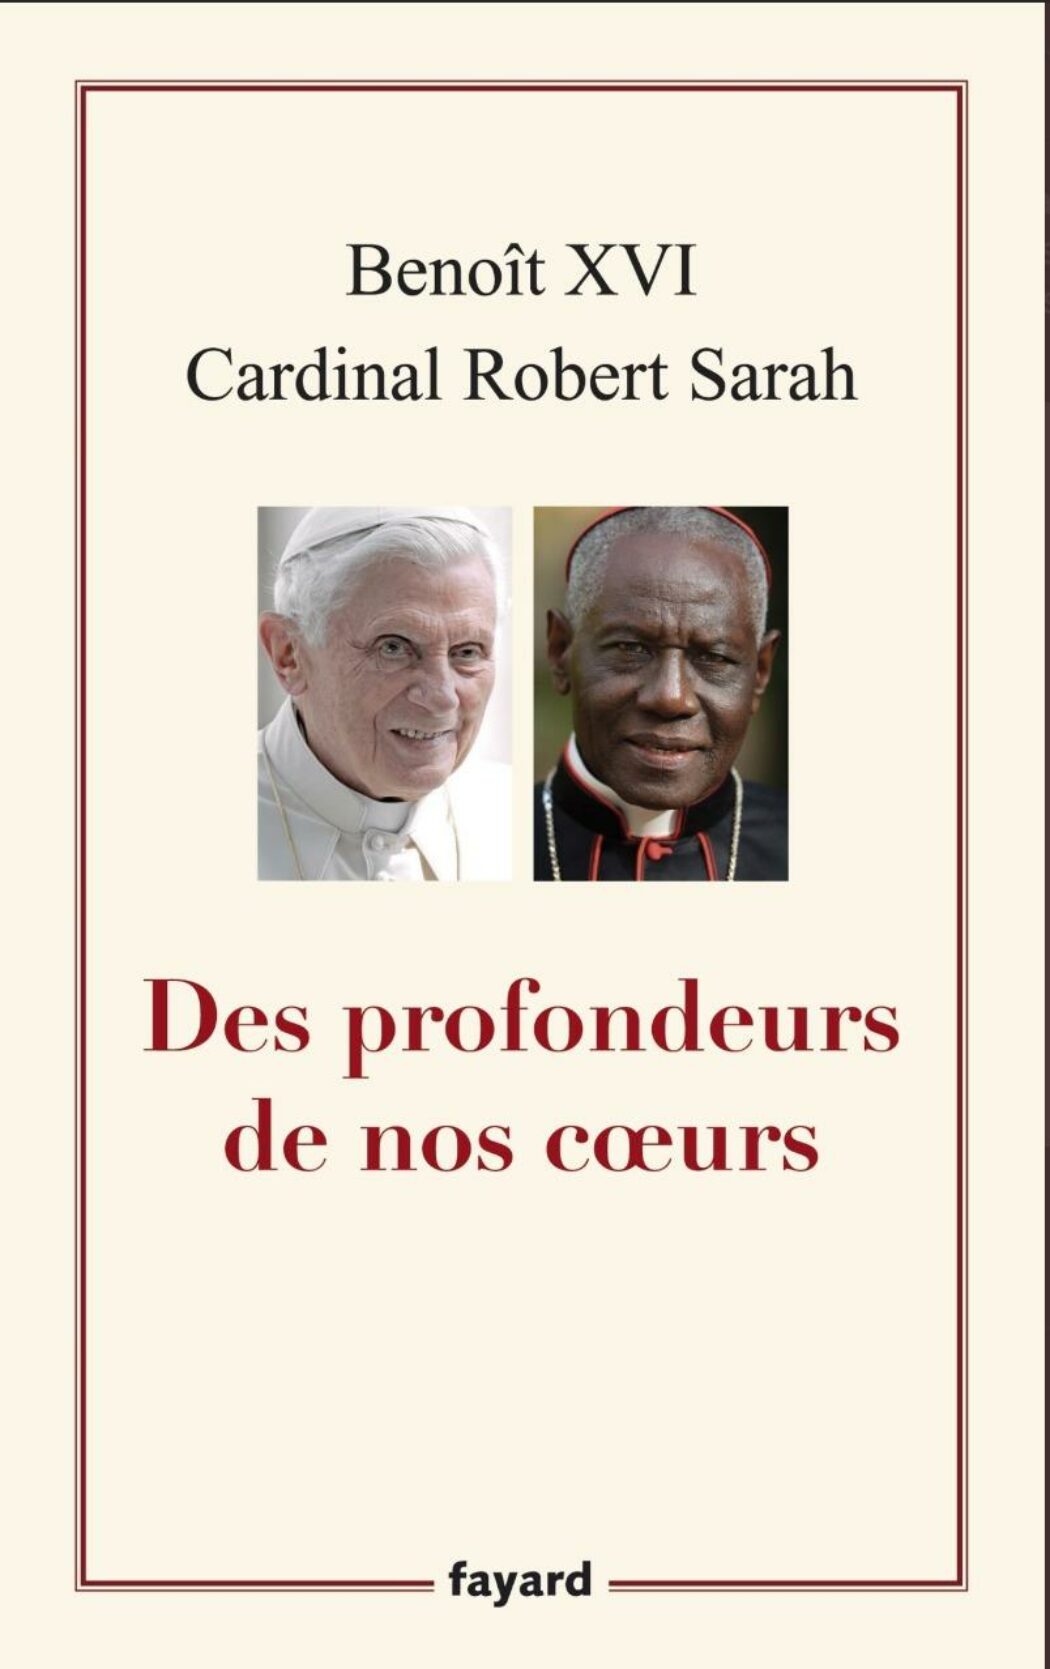 Célibat des prêtres : Benoît XVI sort du silence